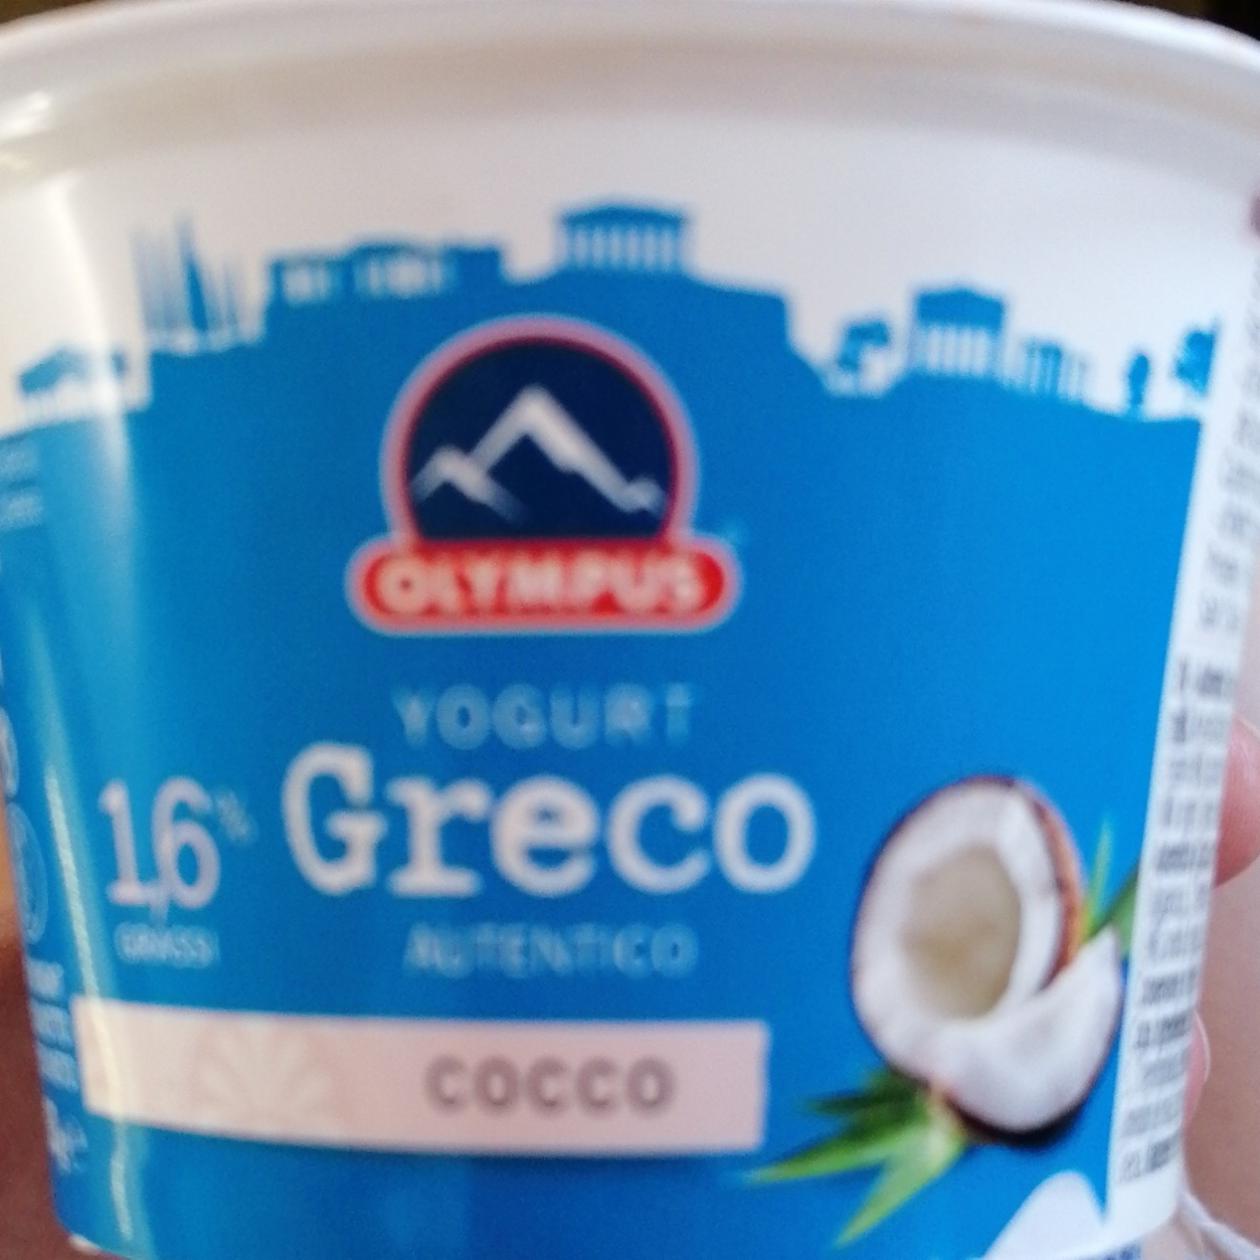 Fotografie - greco yogurt cocco Olympus